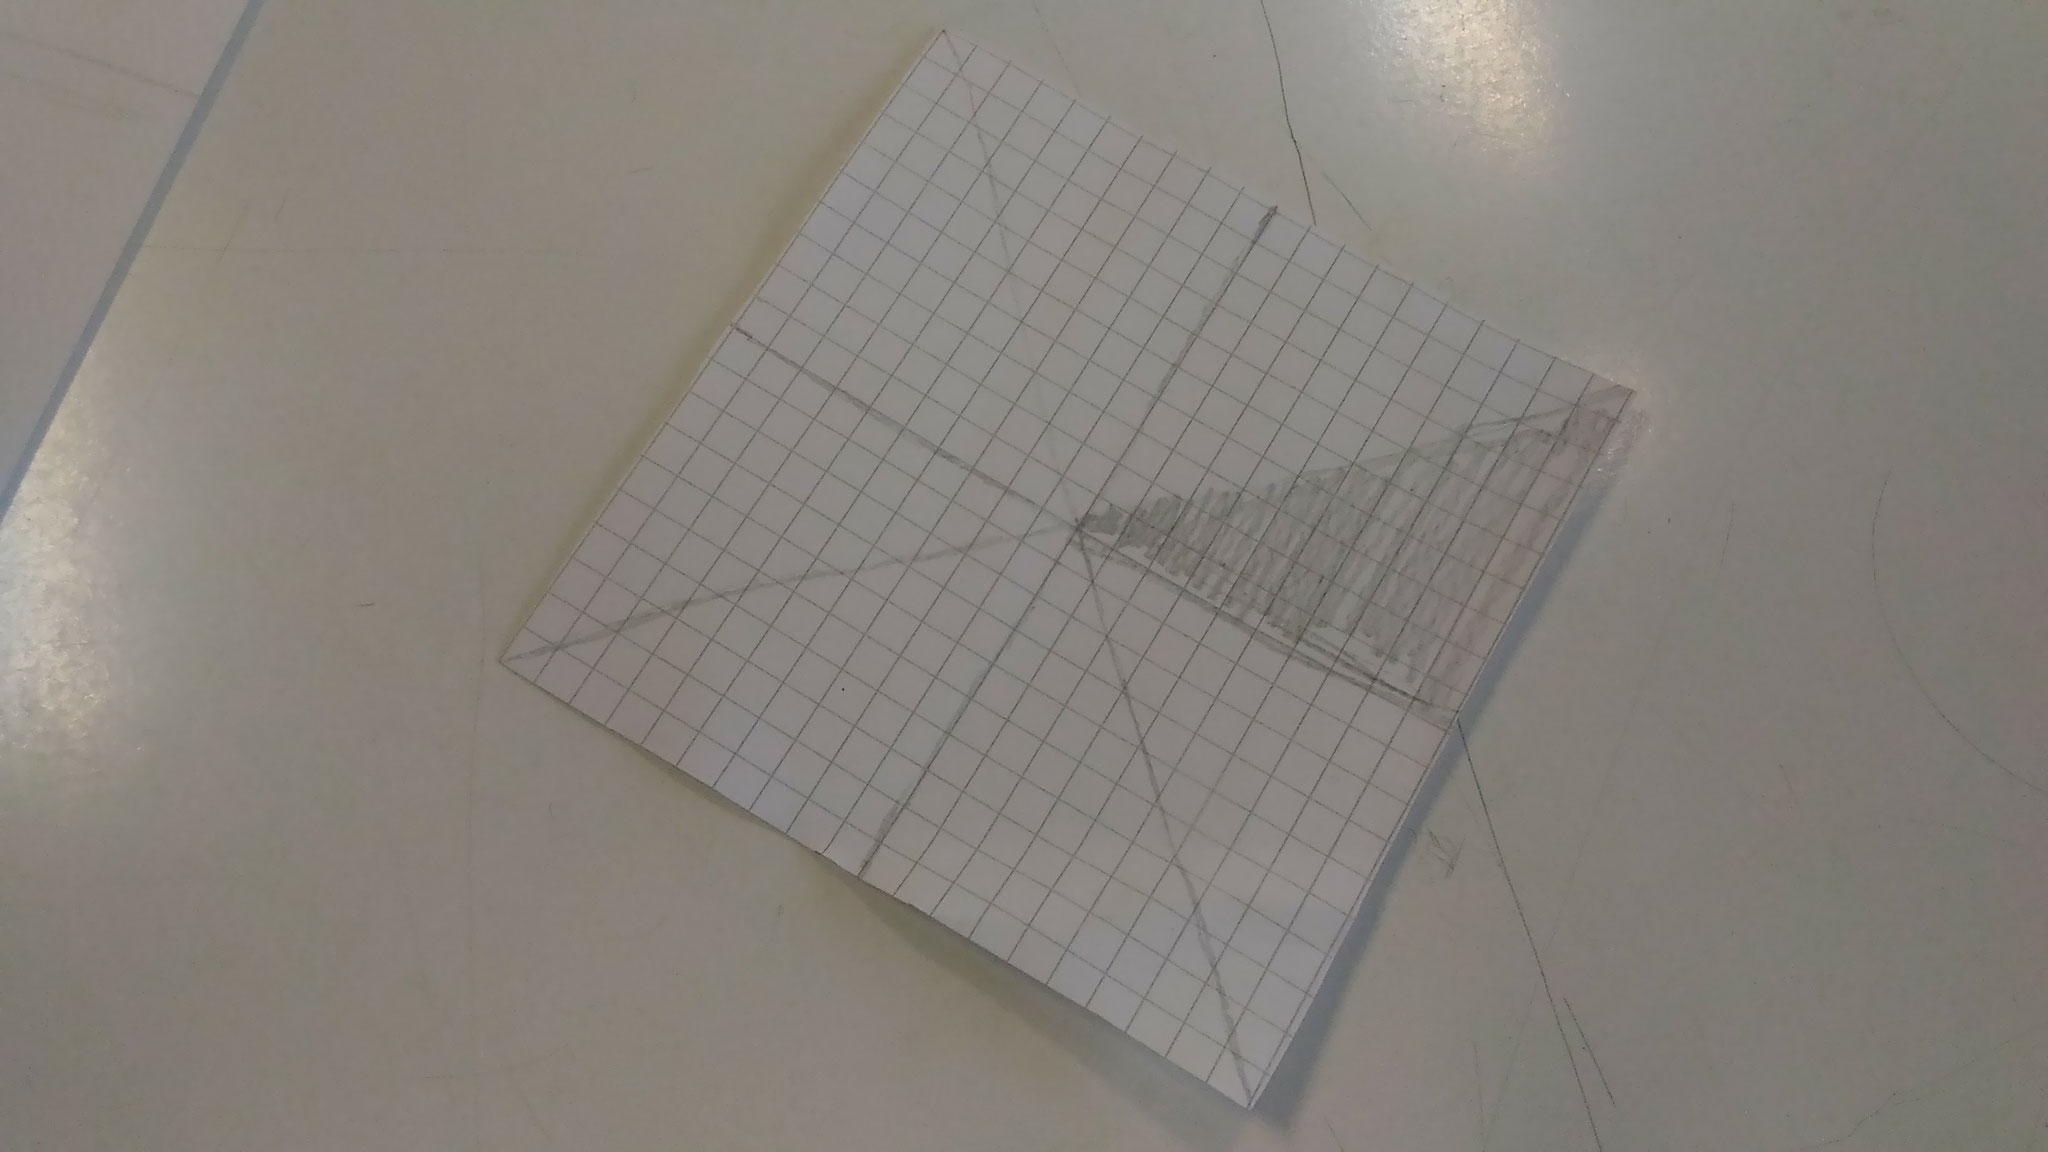 Ritaglio un quadrato da 20 quadretti per 20 quadretti e traccio le linee principali.